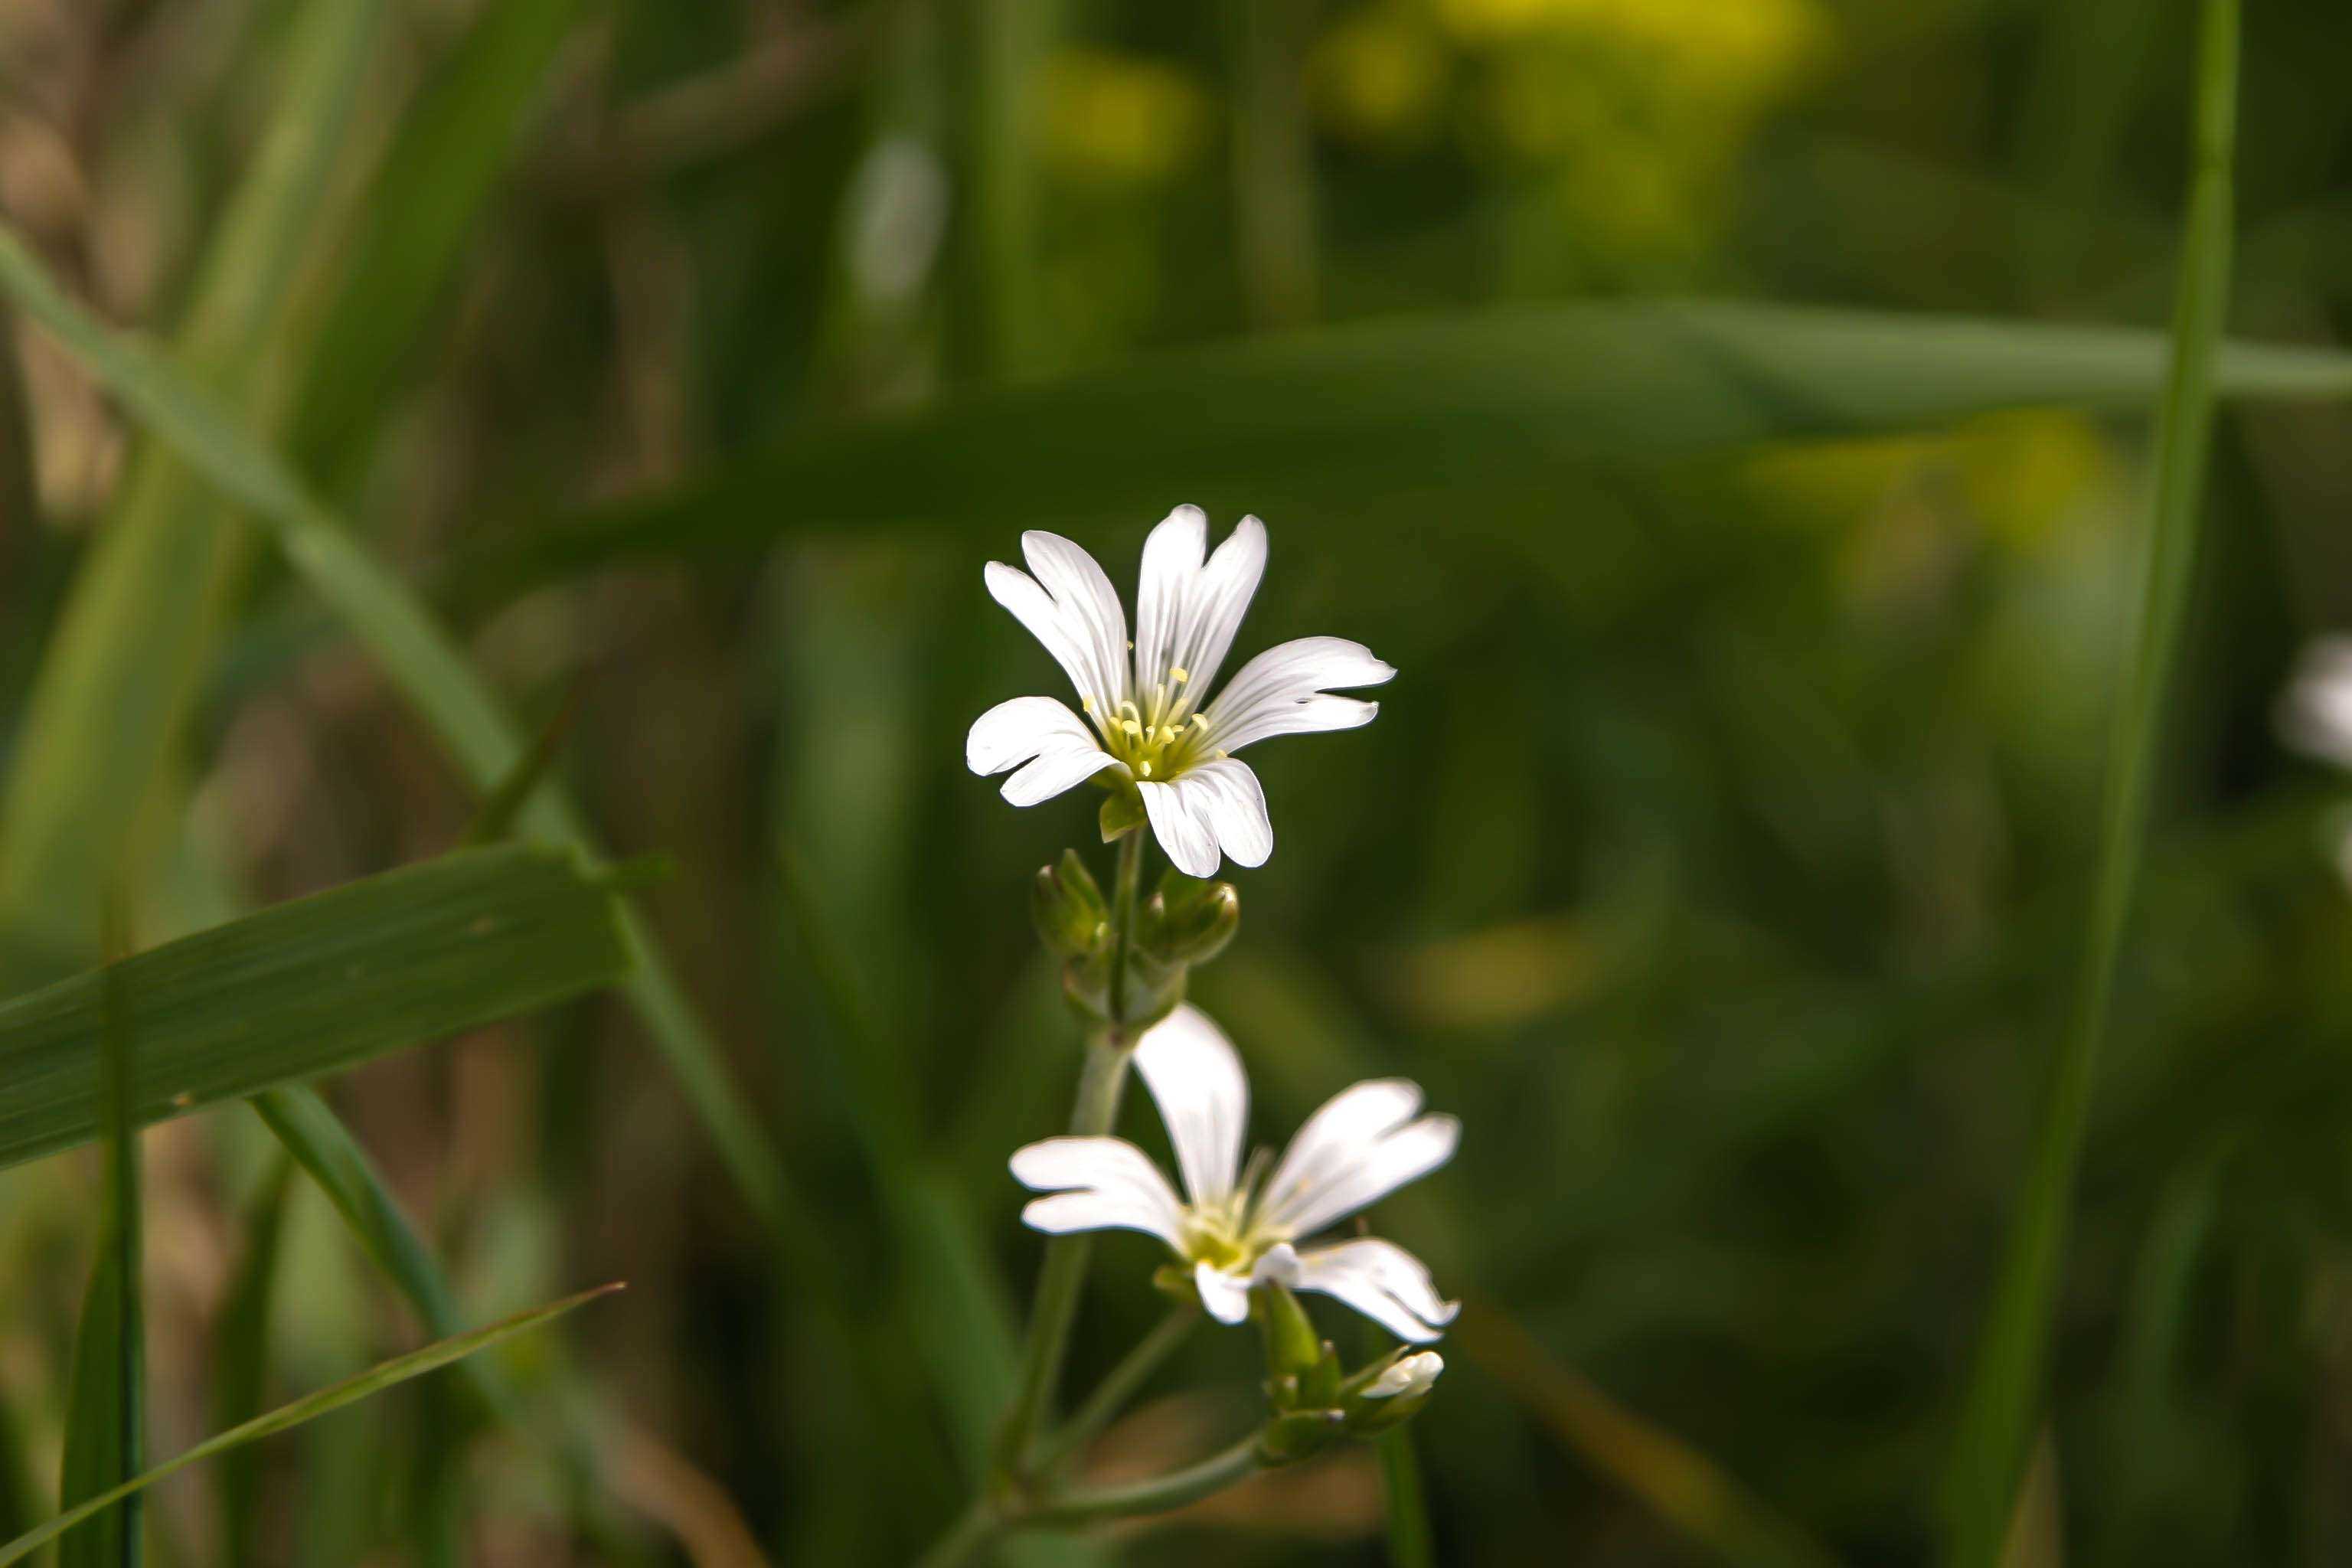 Hintergrundbilder | Kleine weiße Blüten